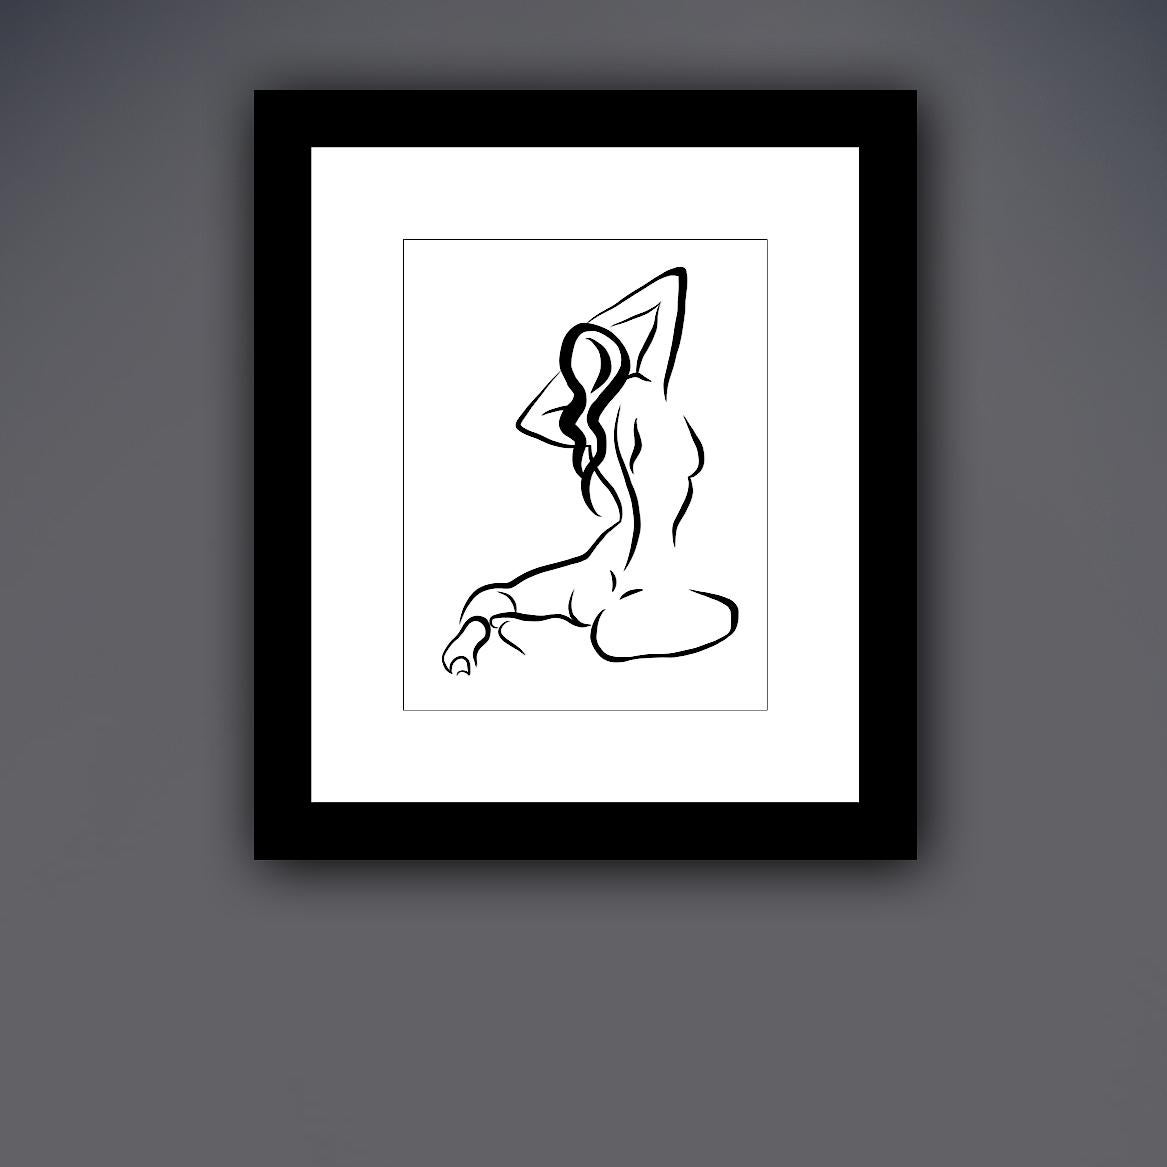 Haiku #17 - Digitale Vektor-Zeichnung eines sitzenden weiblichen Aktes von hinten (Zeitgenössisch), Print, von Michael Binkley